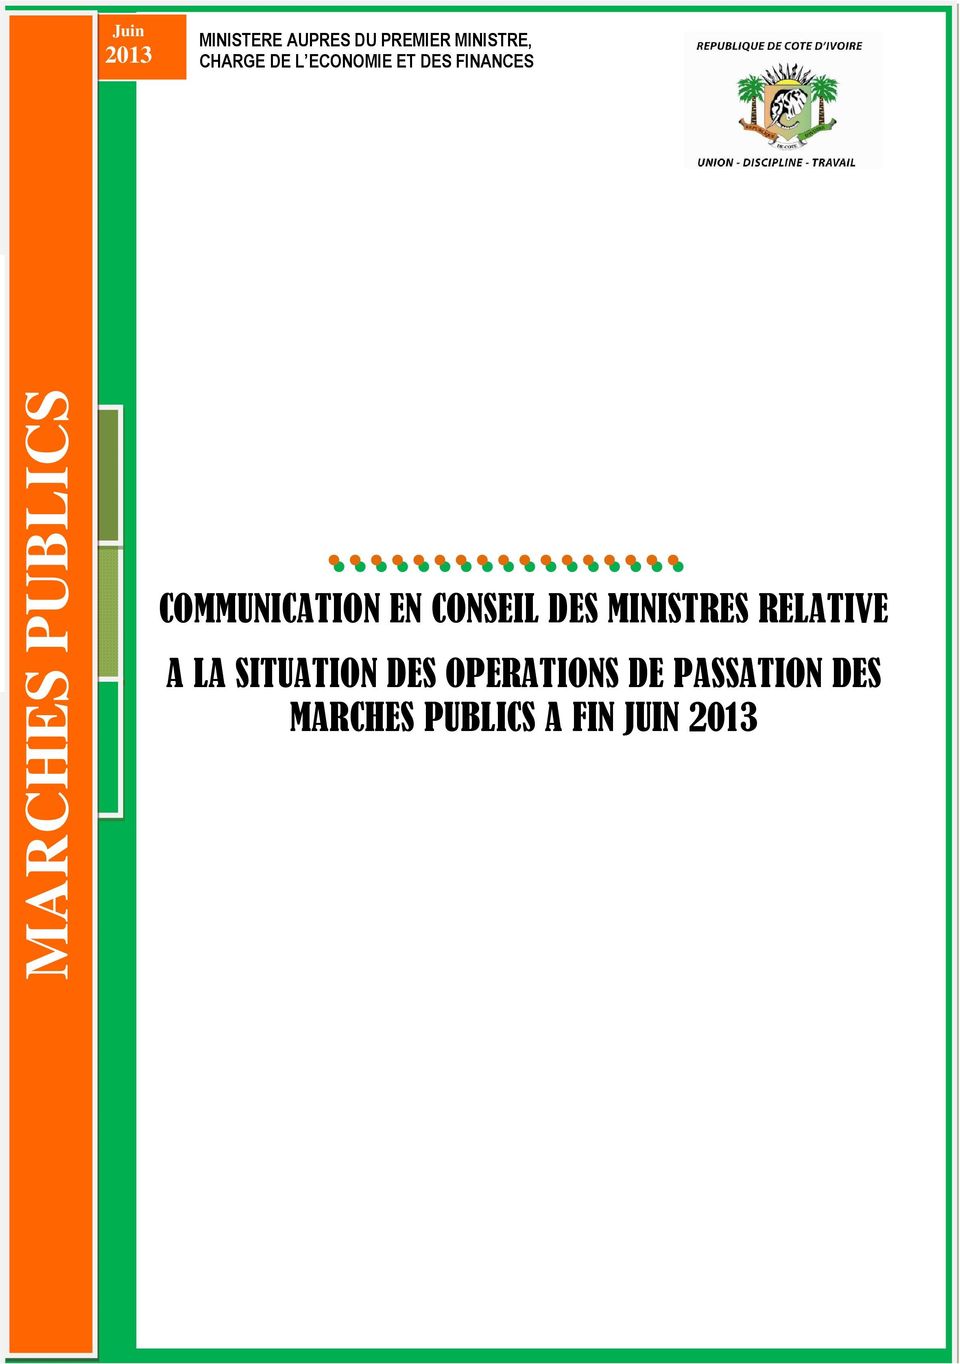 SITUATION DES OPERATIONS DE PASSATION DES MARCHES PUBLICS A FIN JUIN 2013 0